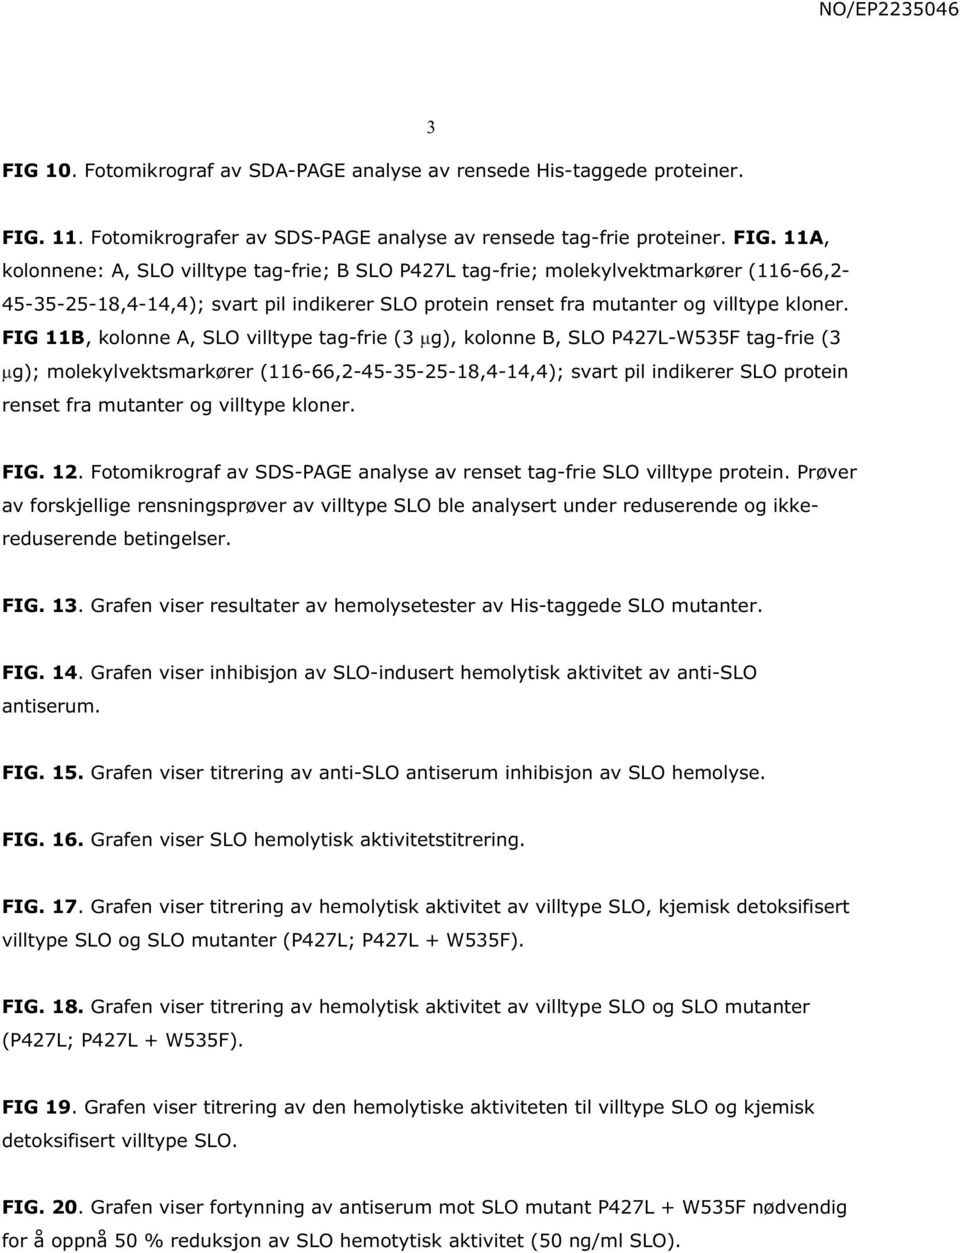 11A, kolonnene: A, SLO villtype tag-frie; B SLO P427L tag-frie; molekylvektmarkører (116-66,2-45-35-25-18,4-14,4); svart pil indikerer SLO protein renset fra mutanter og villtype kloner.